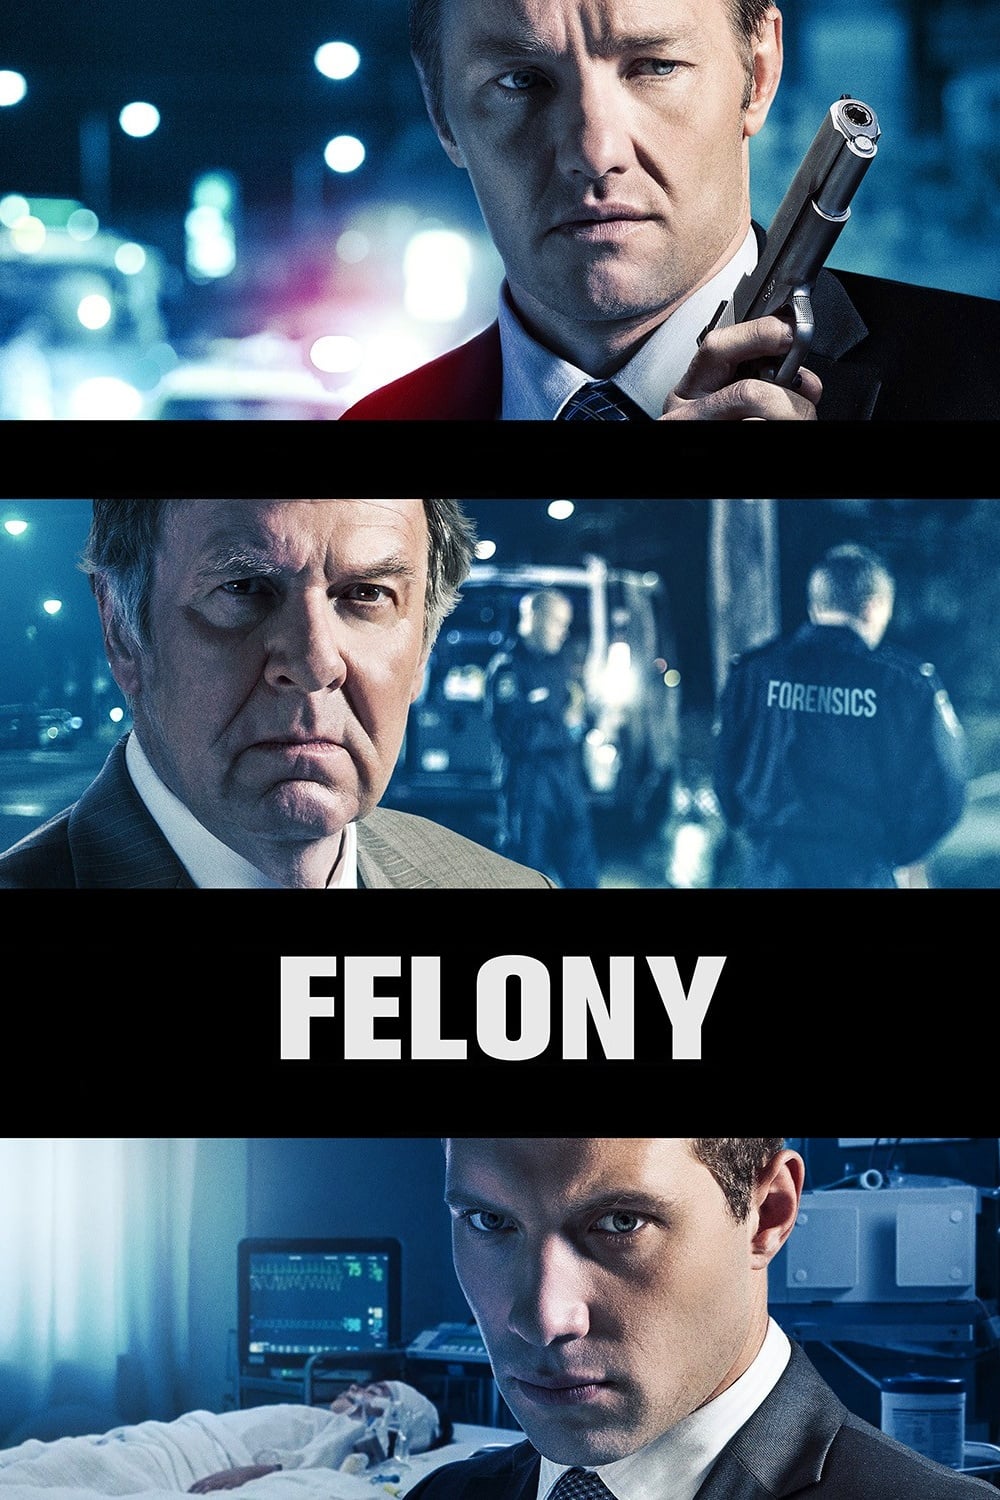 Felony (2014)